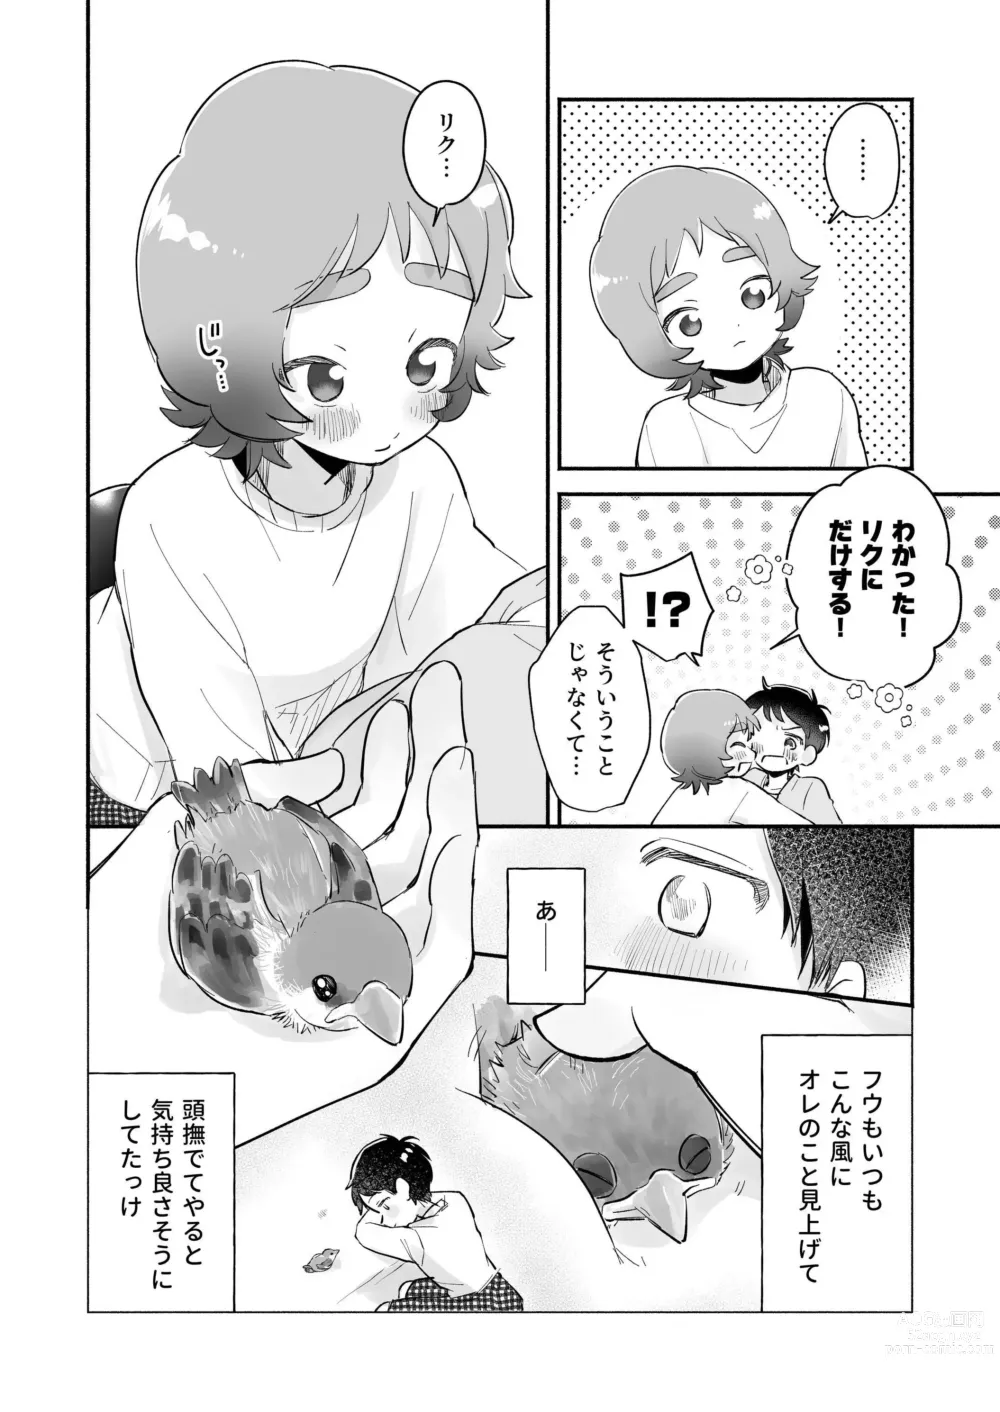 Page 10 of doujinshi Riku to Fuu Akachan Dekireba Kazoku ni Nareru no ka na